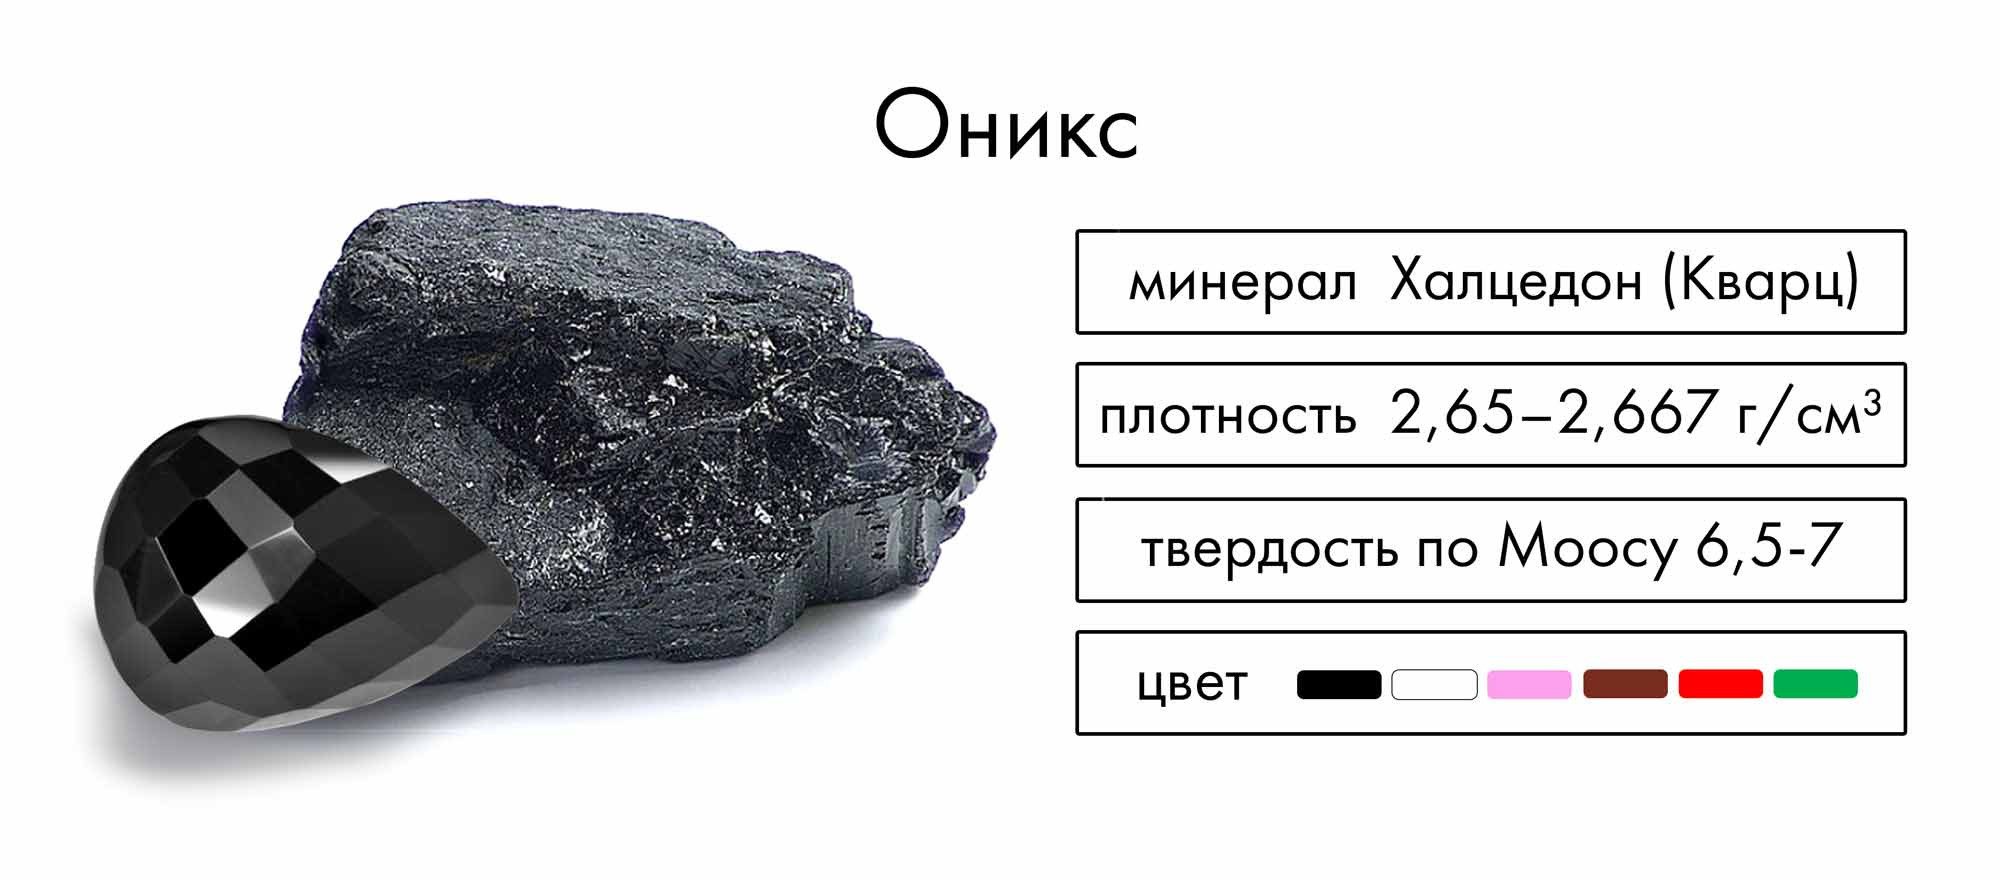 Оникс – минерал Халцедон ( кварц ) – плотность 2,65 – 2,667 г/см3, твердость по моосу 6,5 - 7, цвет